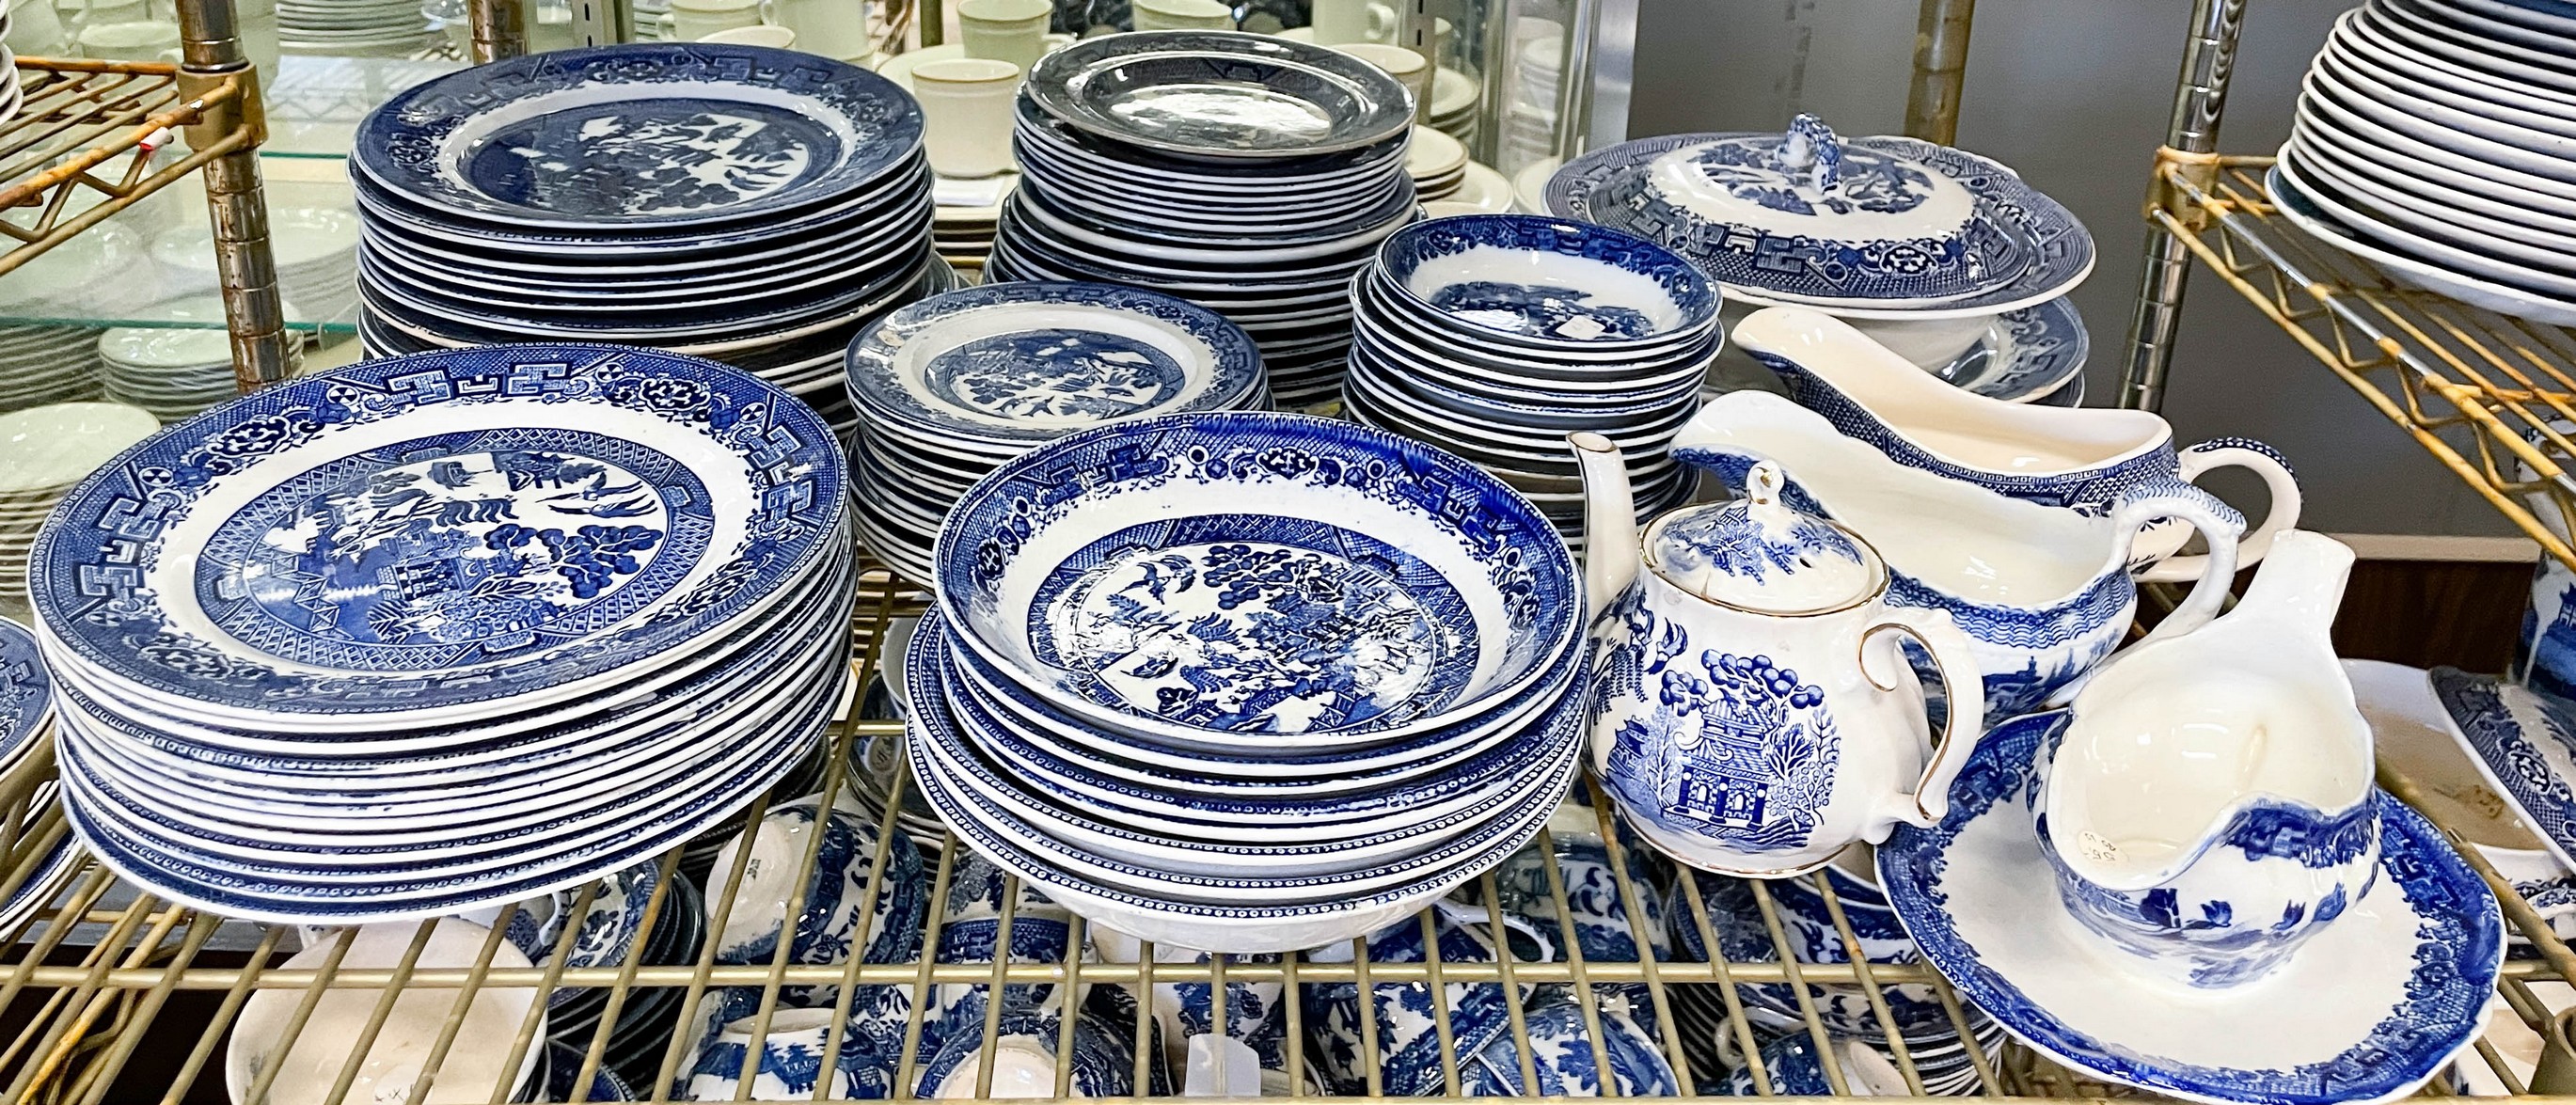 (90+) Pcs Blue Willow porcelain